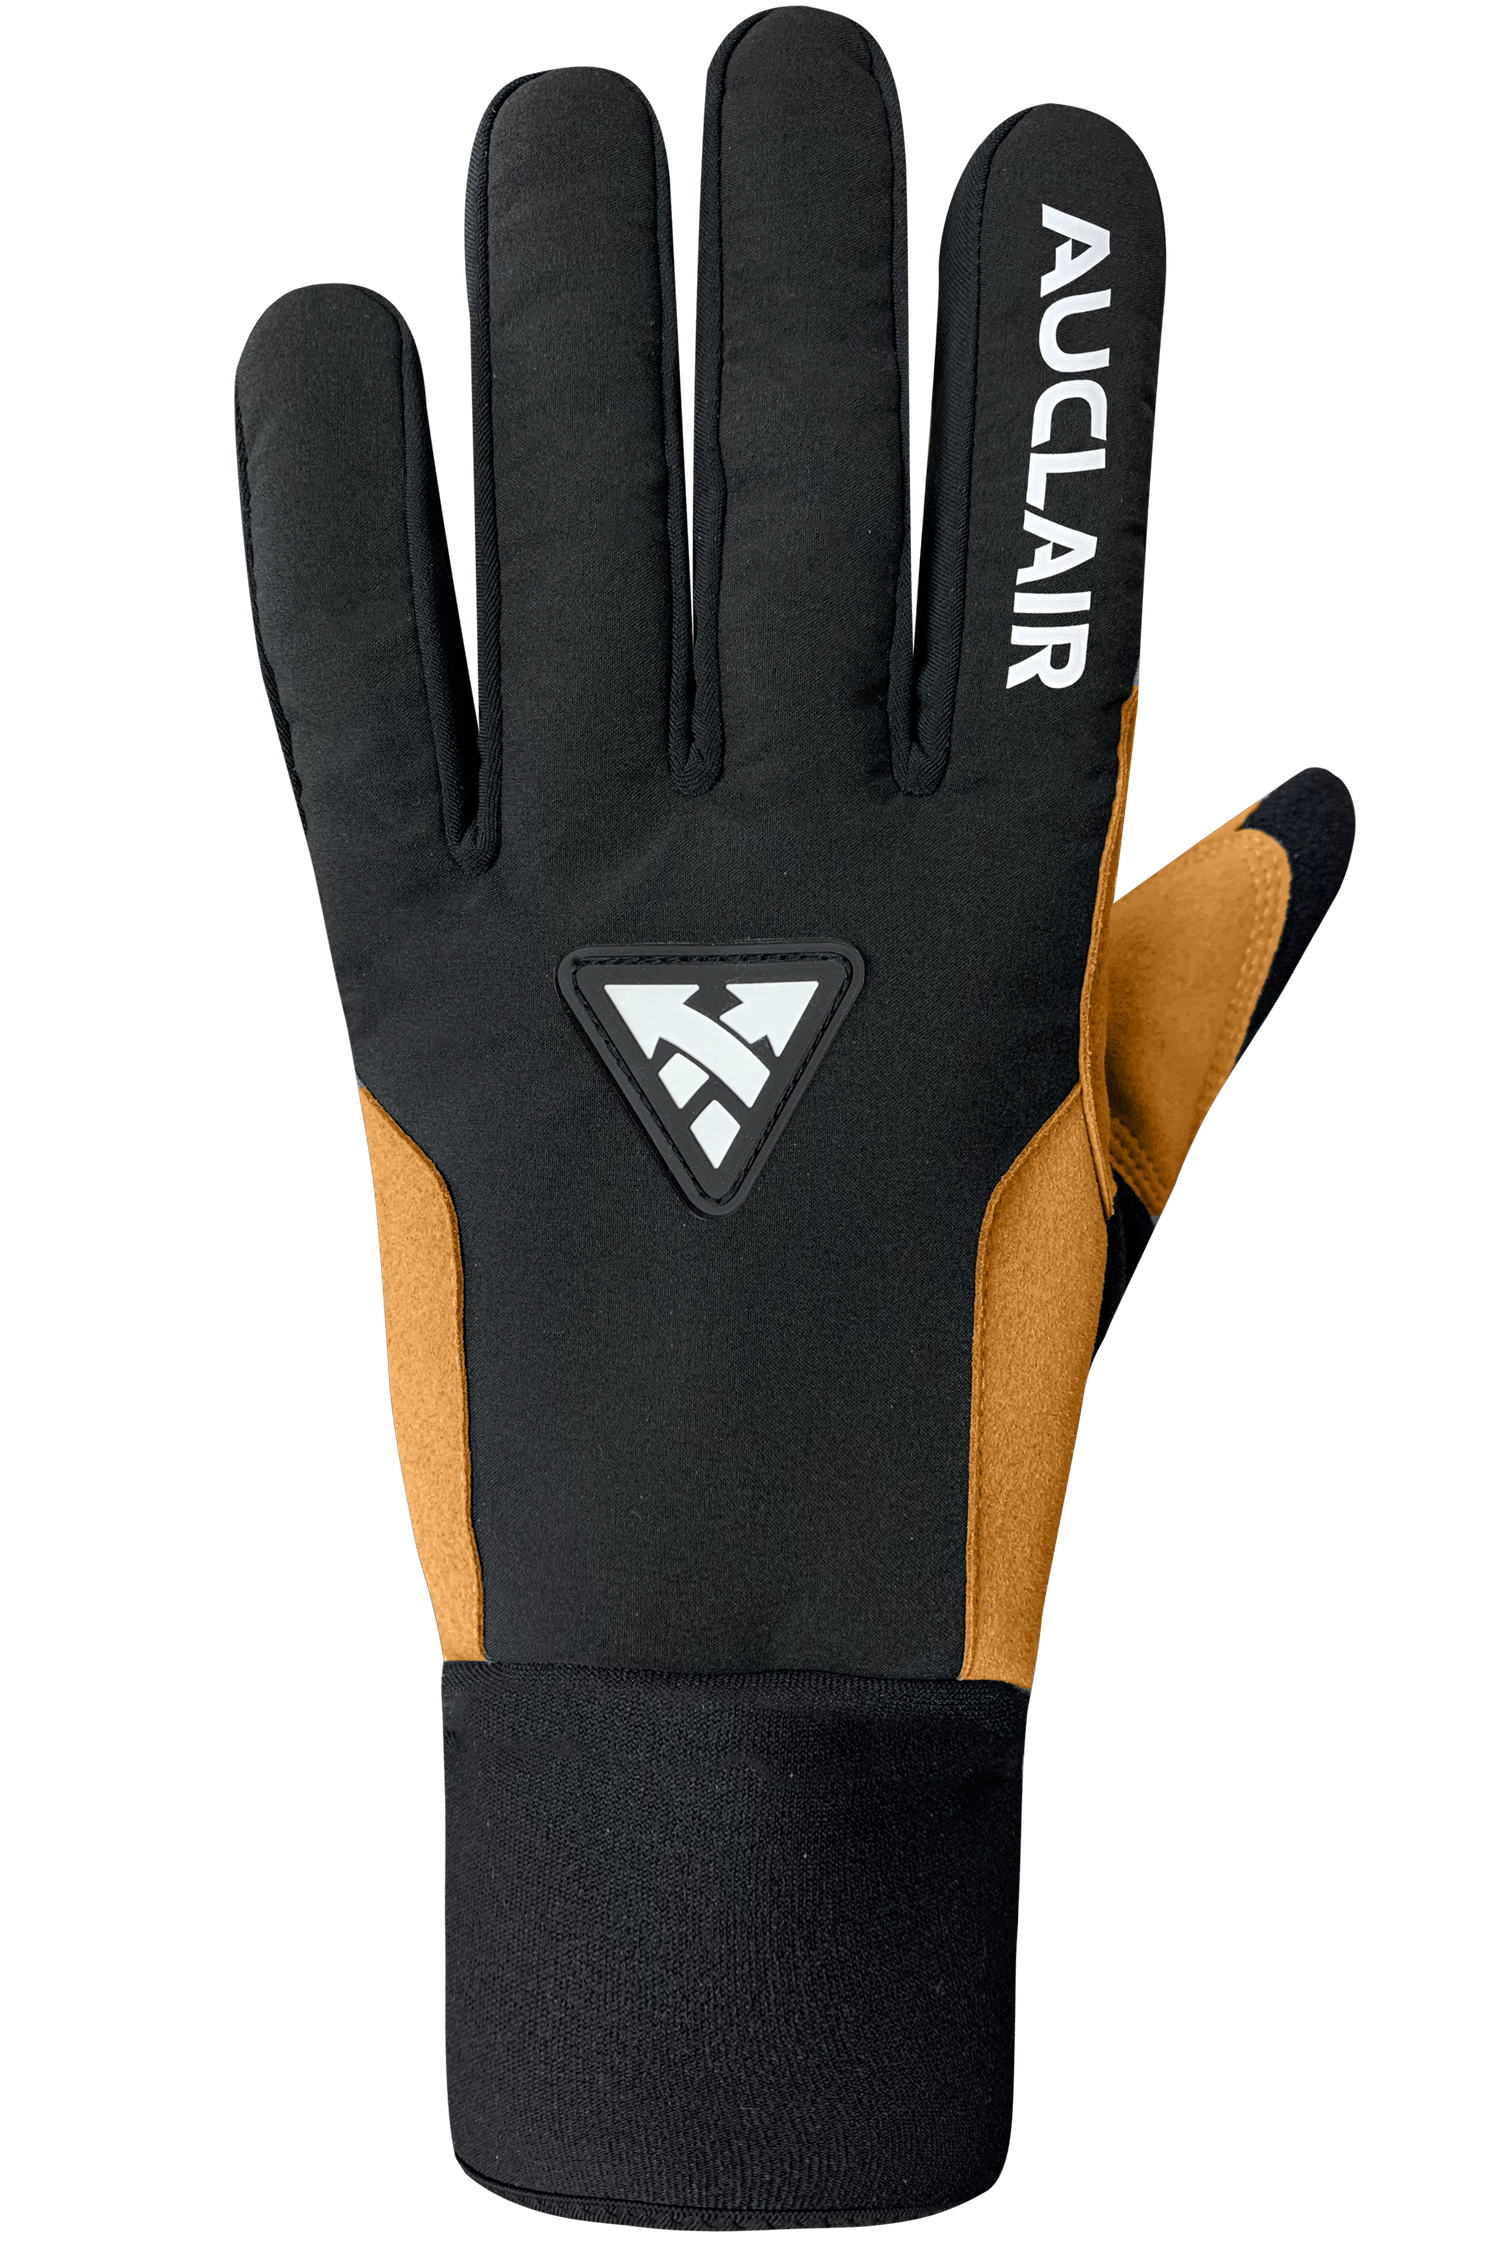 Stellar 2.0 Gloves - Women-Glove-Auclair Sports-S-Black/Tan-Auclair Sports